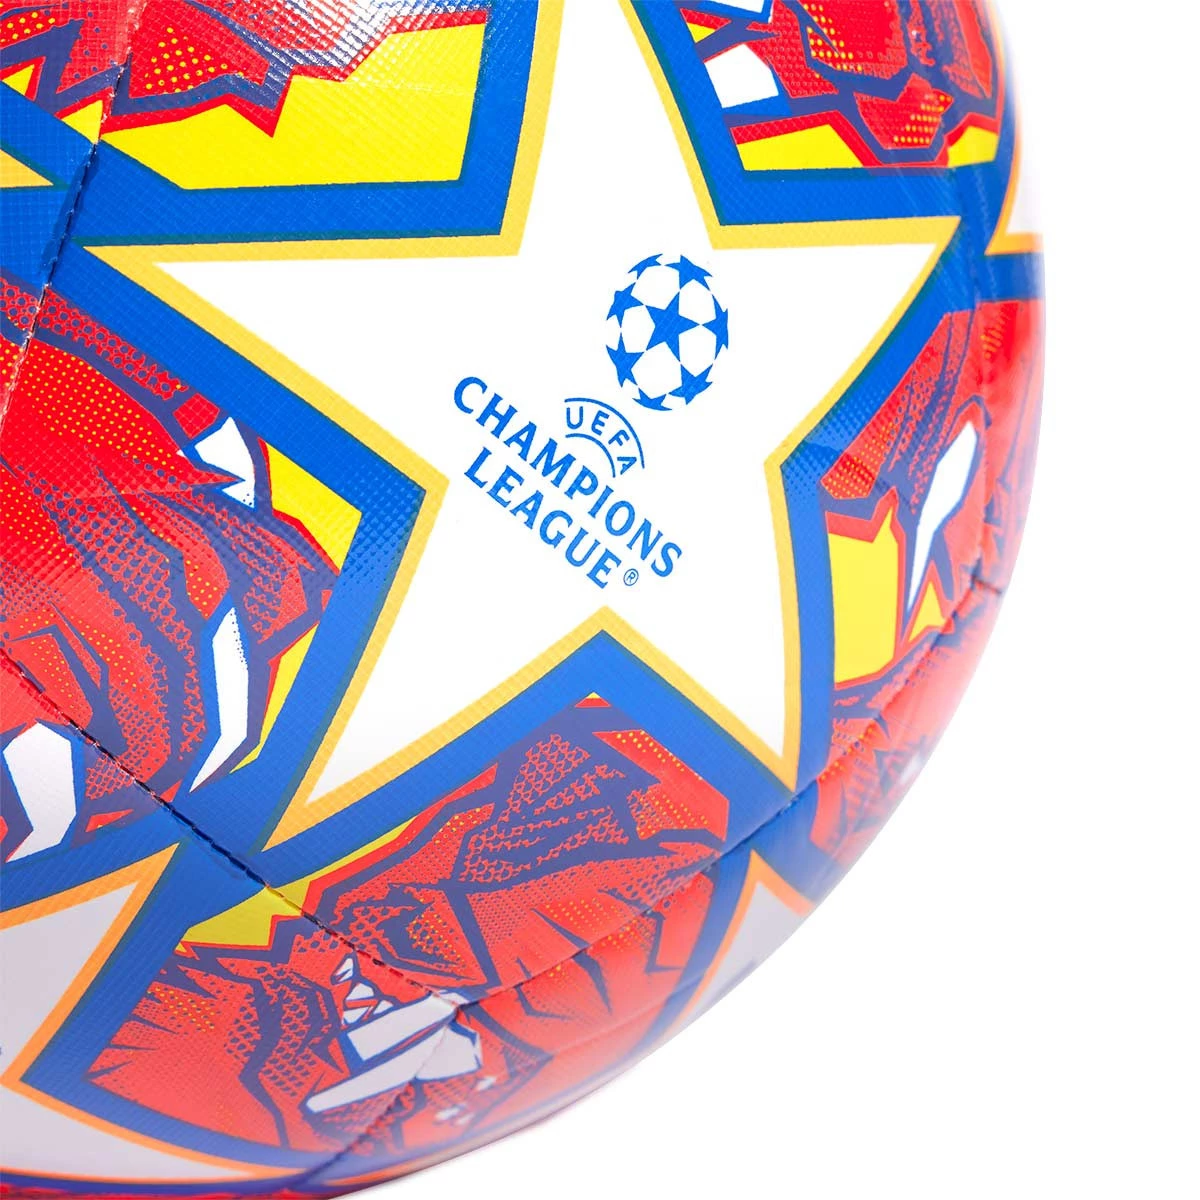 adidas Replica Club Balón UEFA Champions League Final (Talla 5) 2024